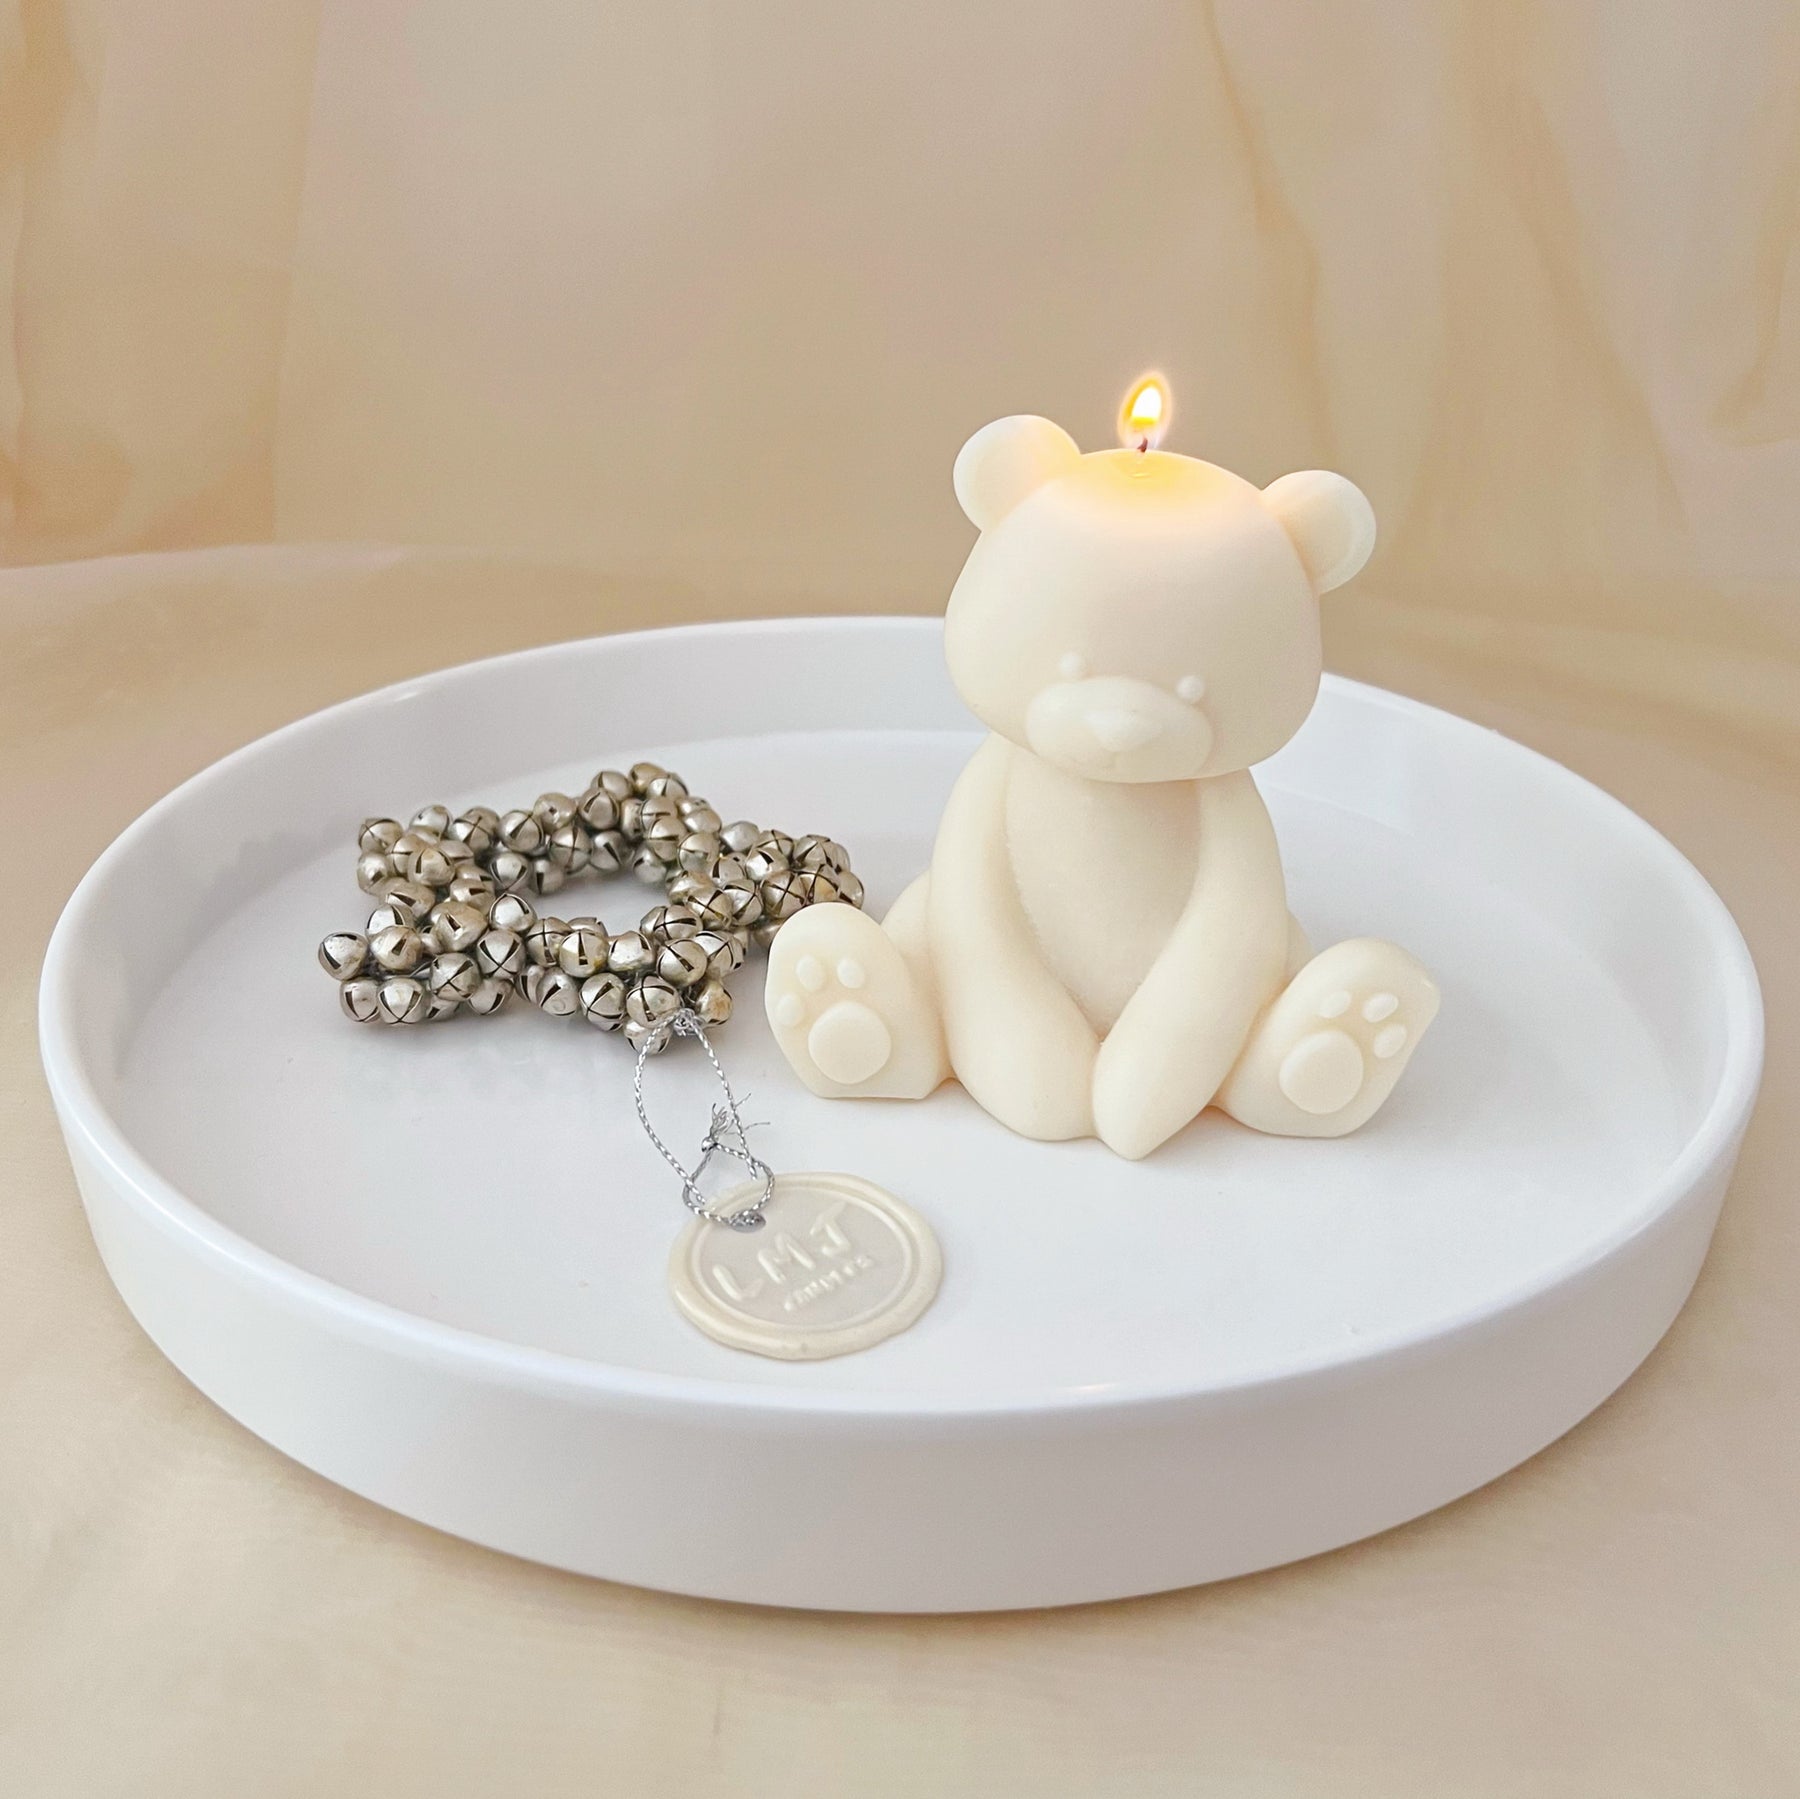 Teddy Bear Candle – Monde de Lumiere